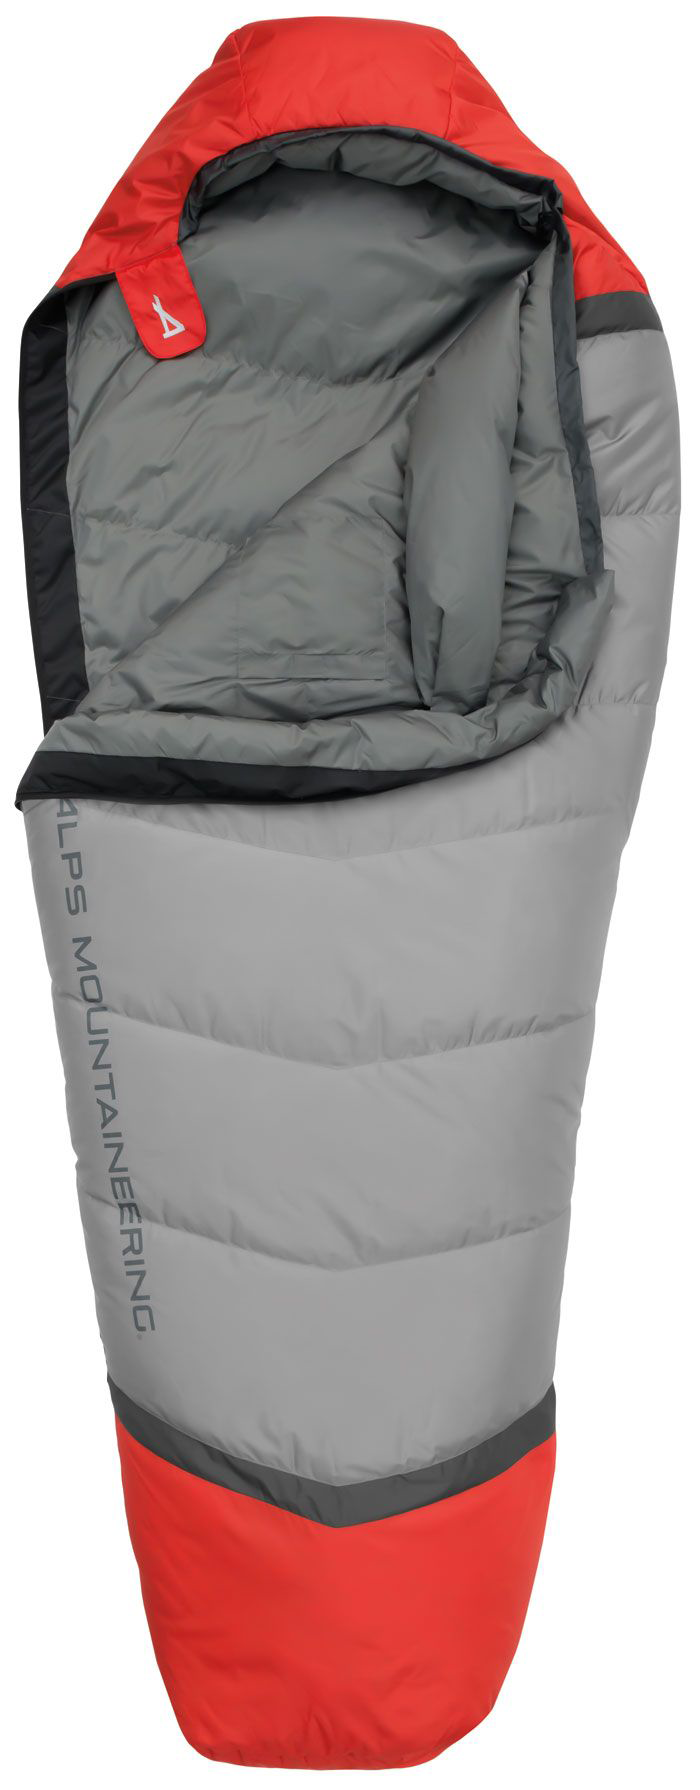 Alps Mountaineering Zenith 30 Mummy Sleeping Bag - Regular